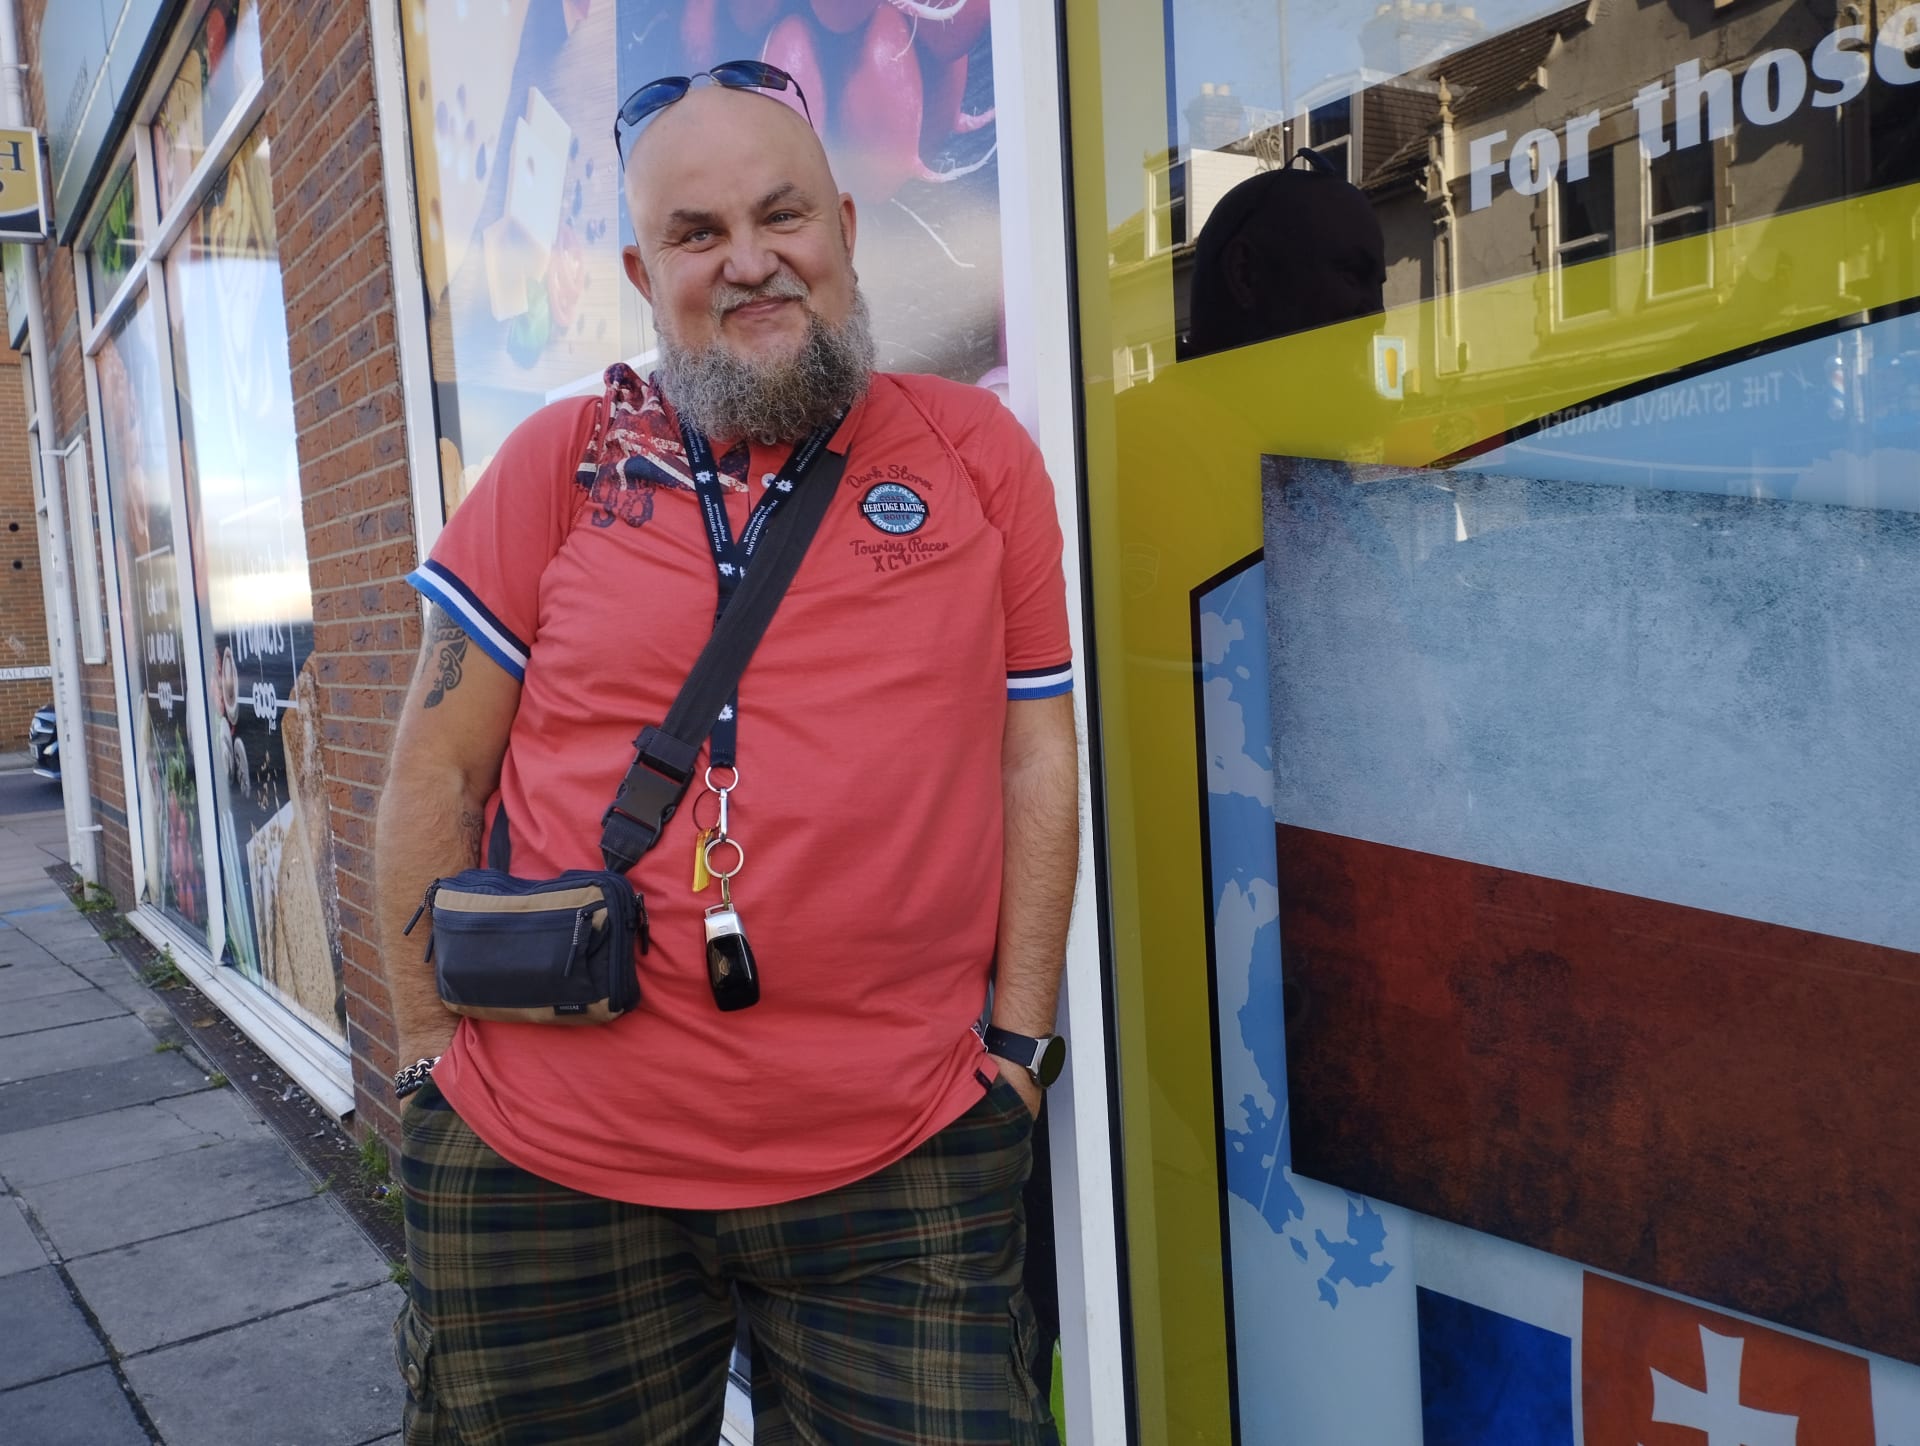 Milionová polská menšina ve Velké Británii také volí. Na snímku 53letý fotograf Radosław Król před polským obchodem Maya v Portsmouthu